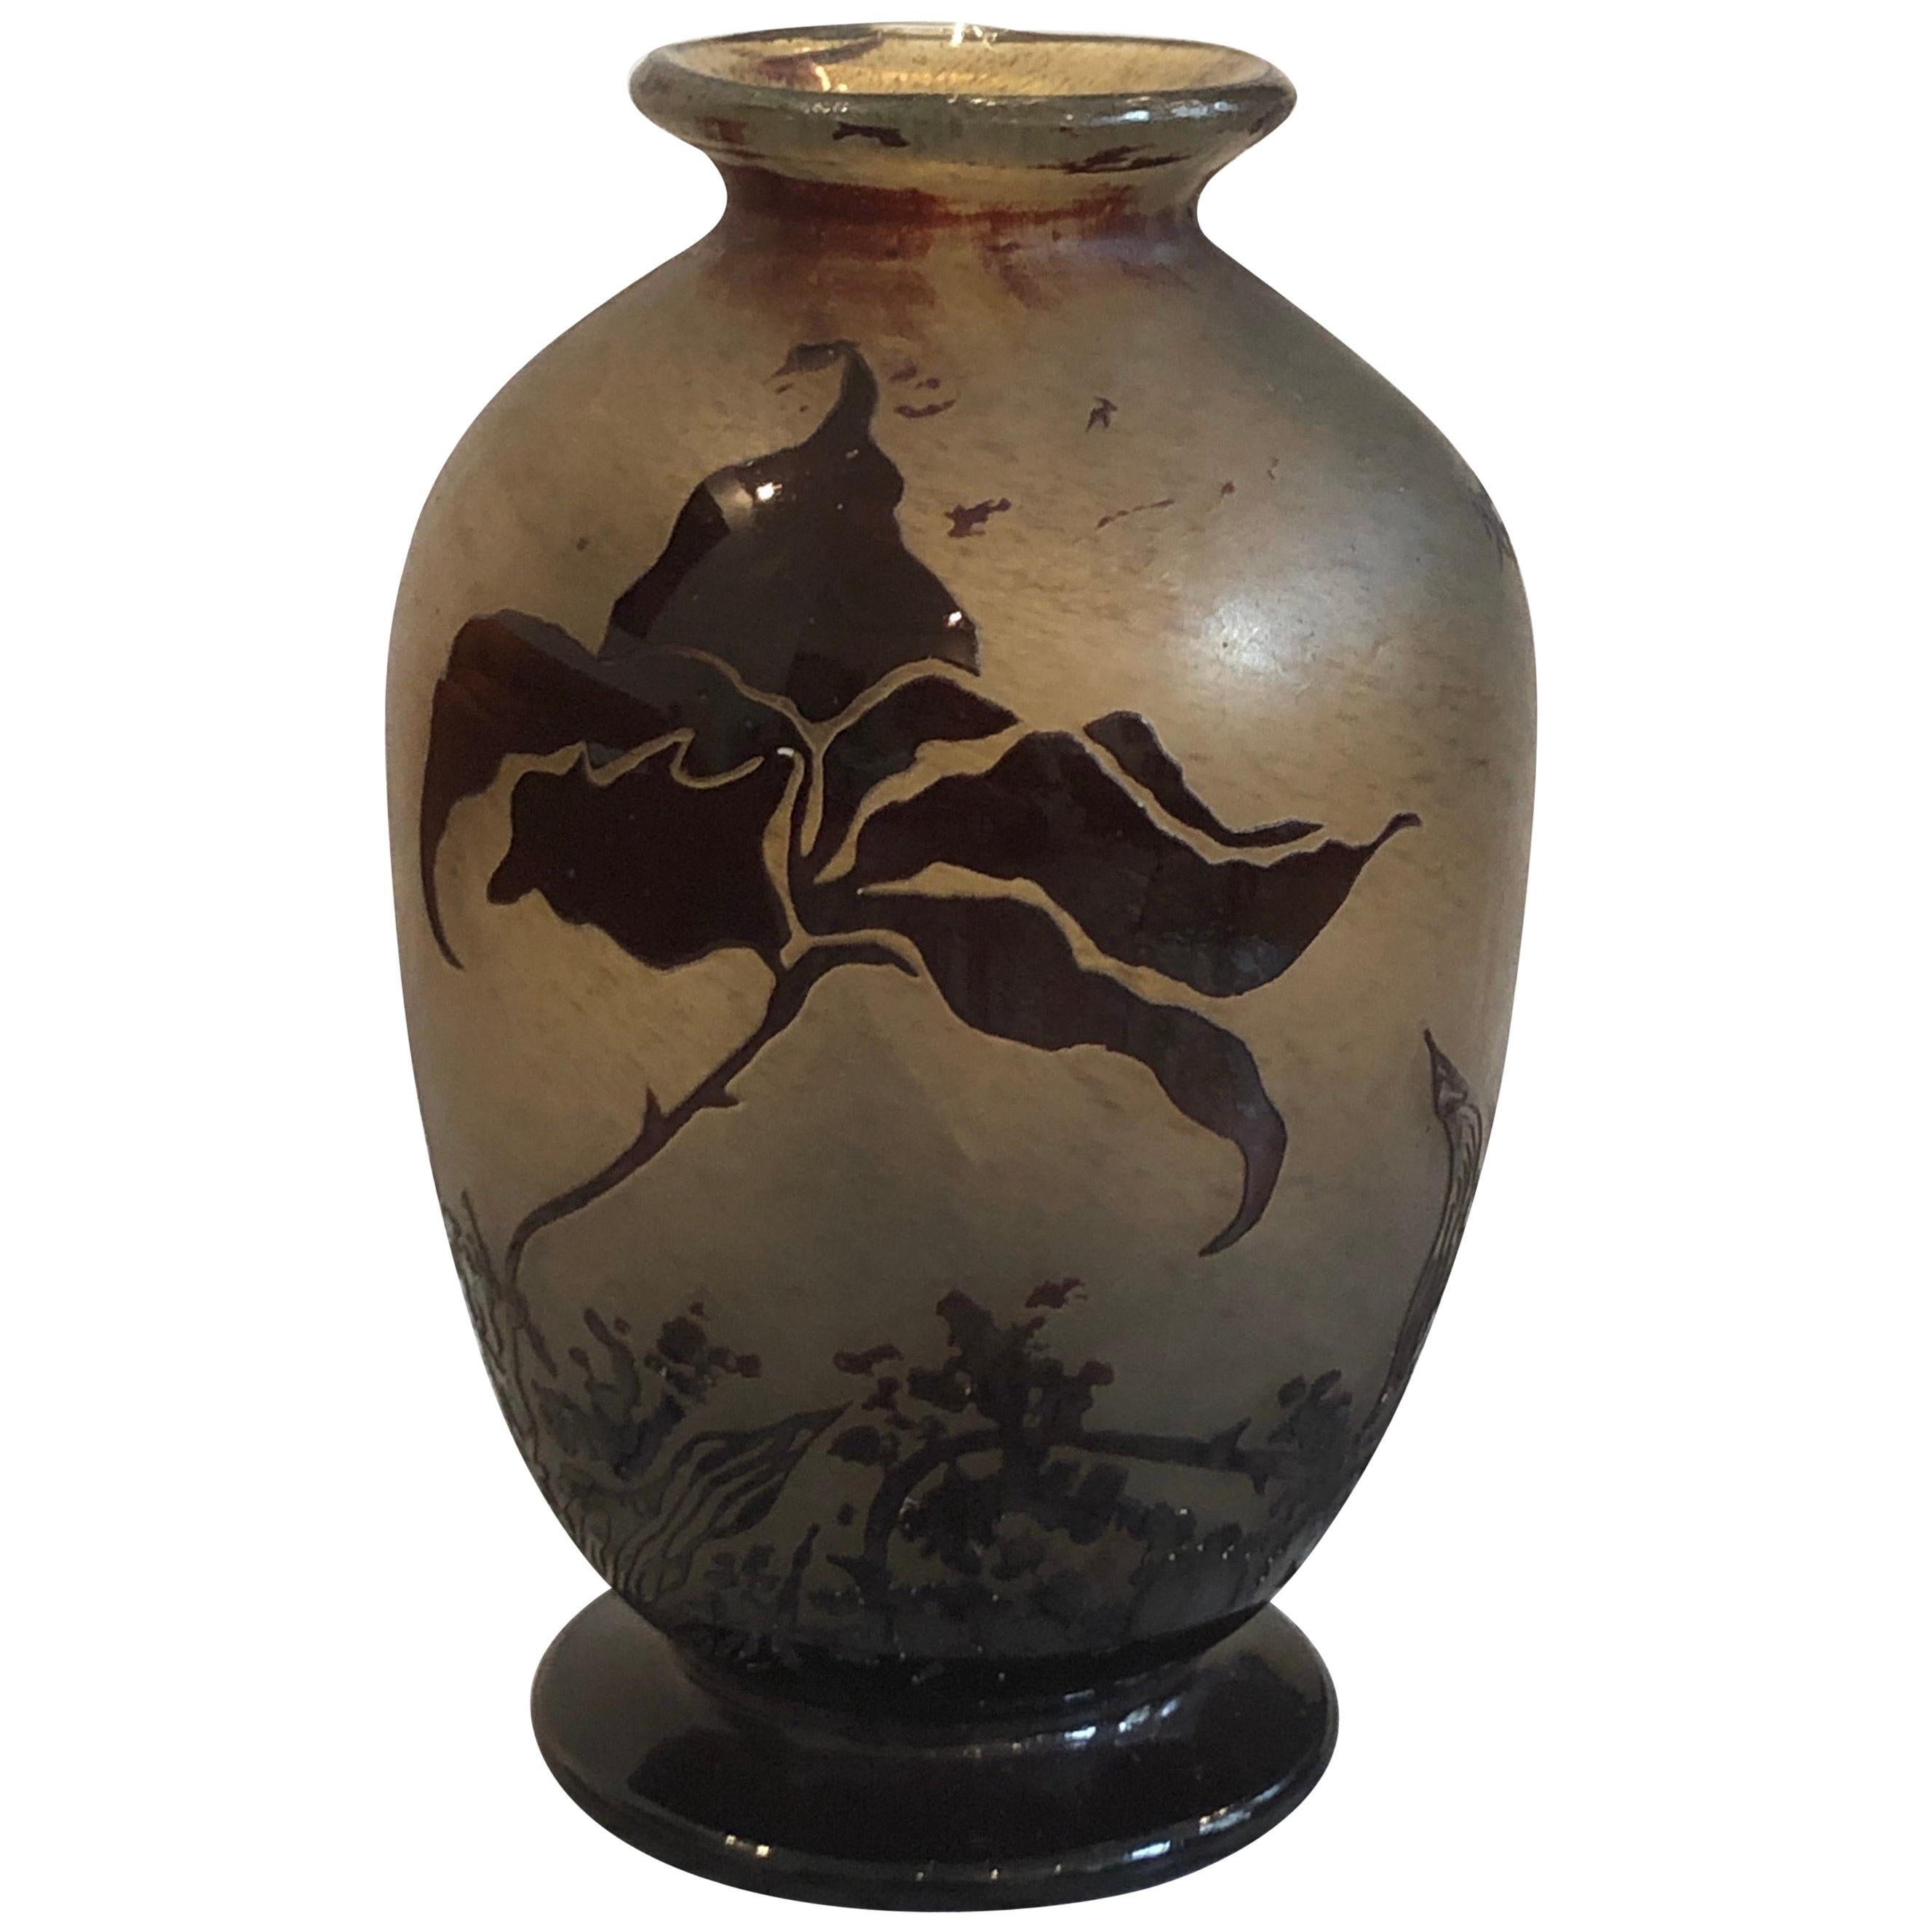 Vase aus geblasenem Glas von Benor aus klarem, säurefreiem, mehrschichtigem Glas mit Blumendekoration